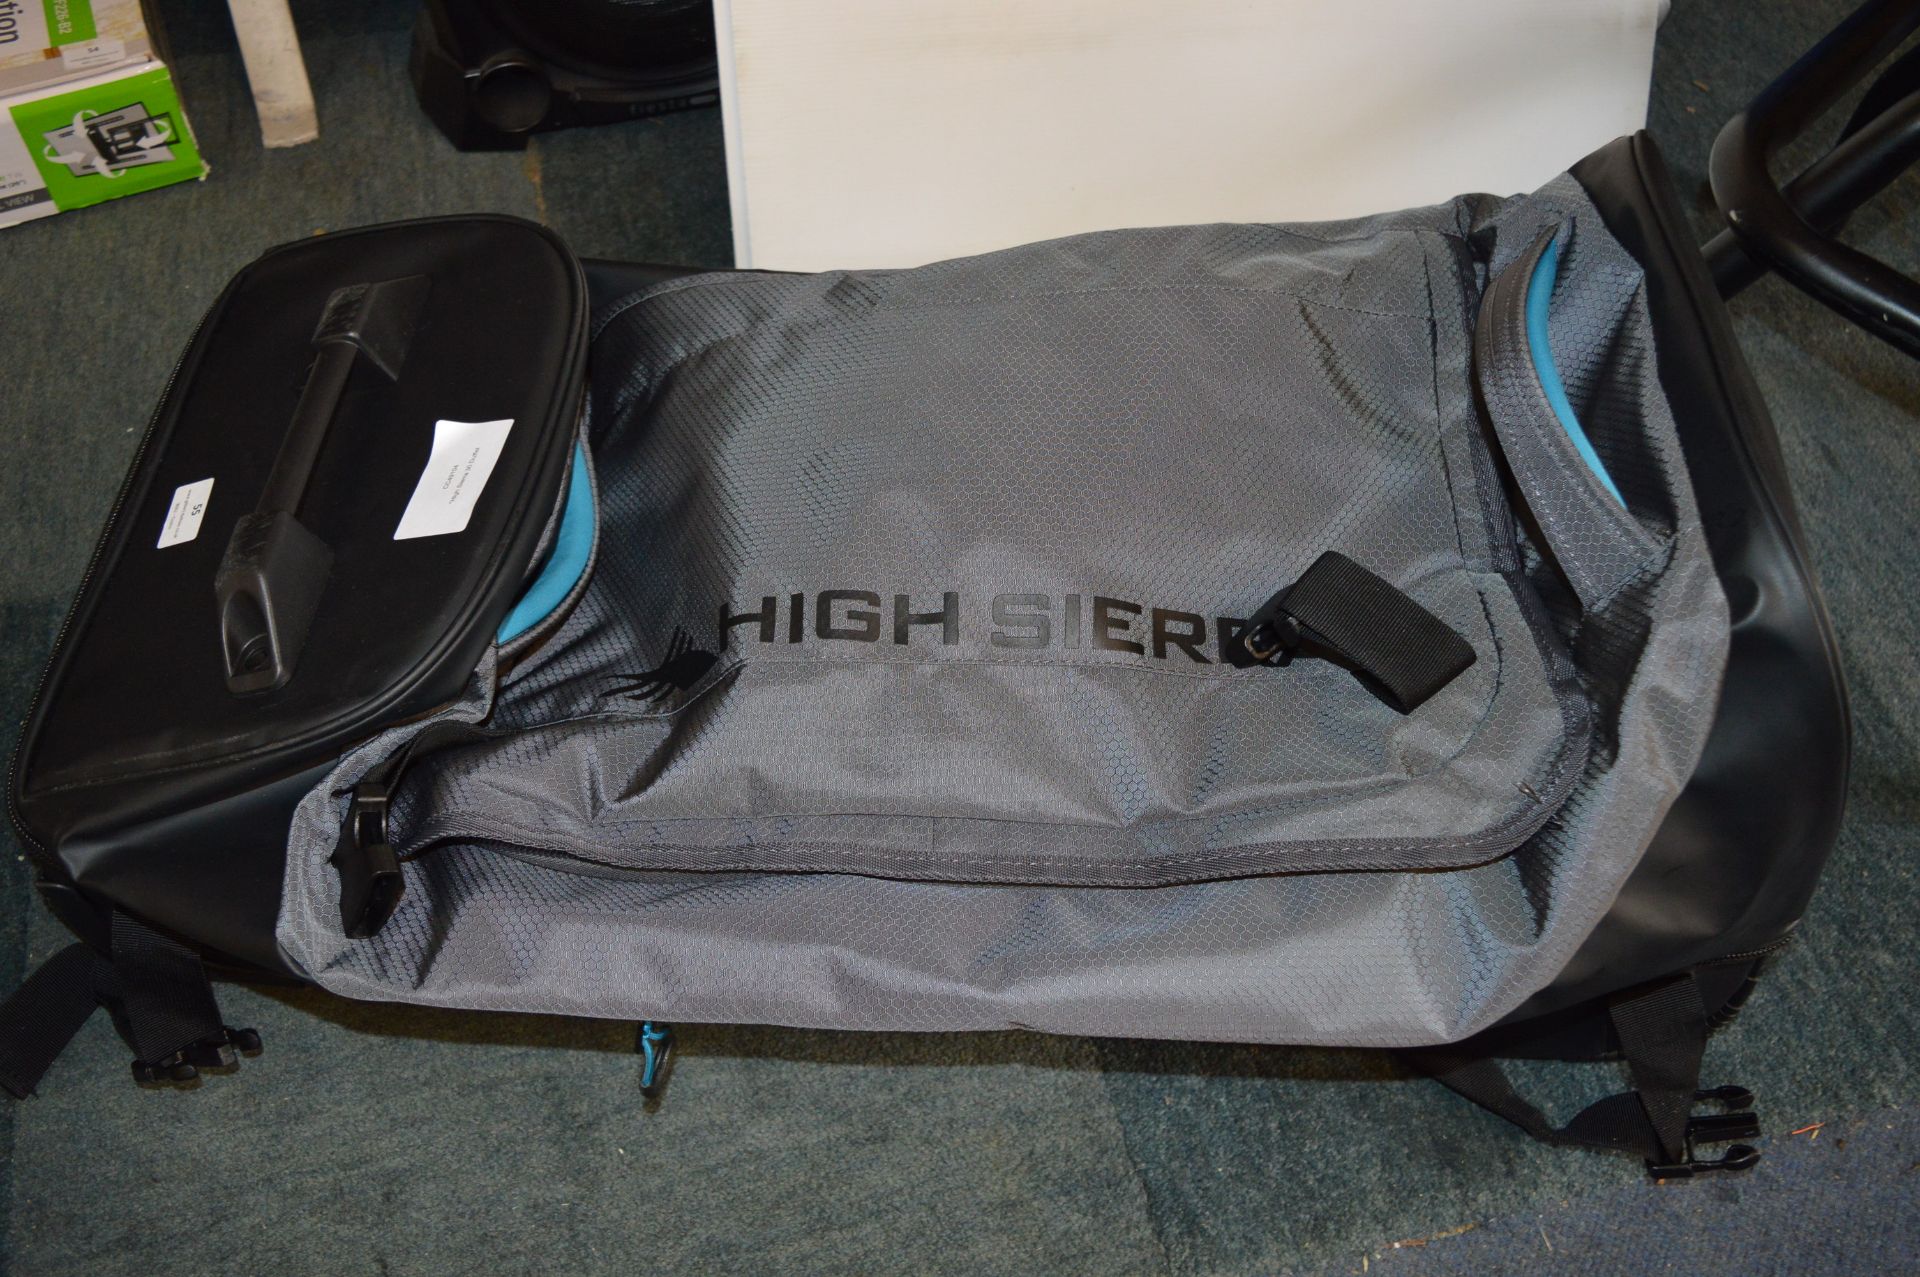 *High Sierra 30" Duffel Bag